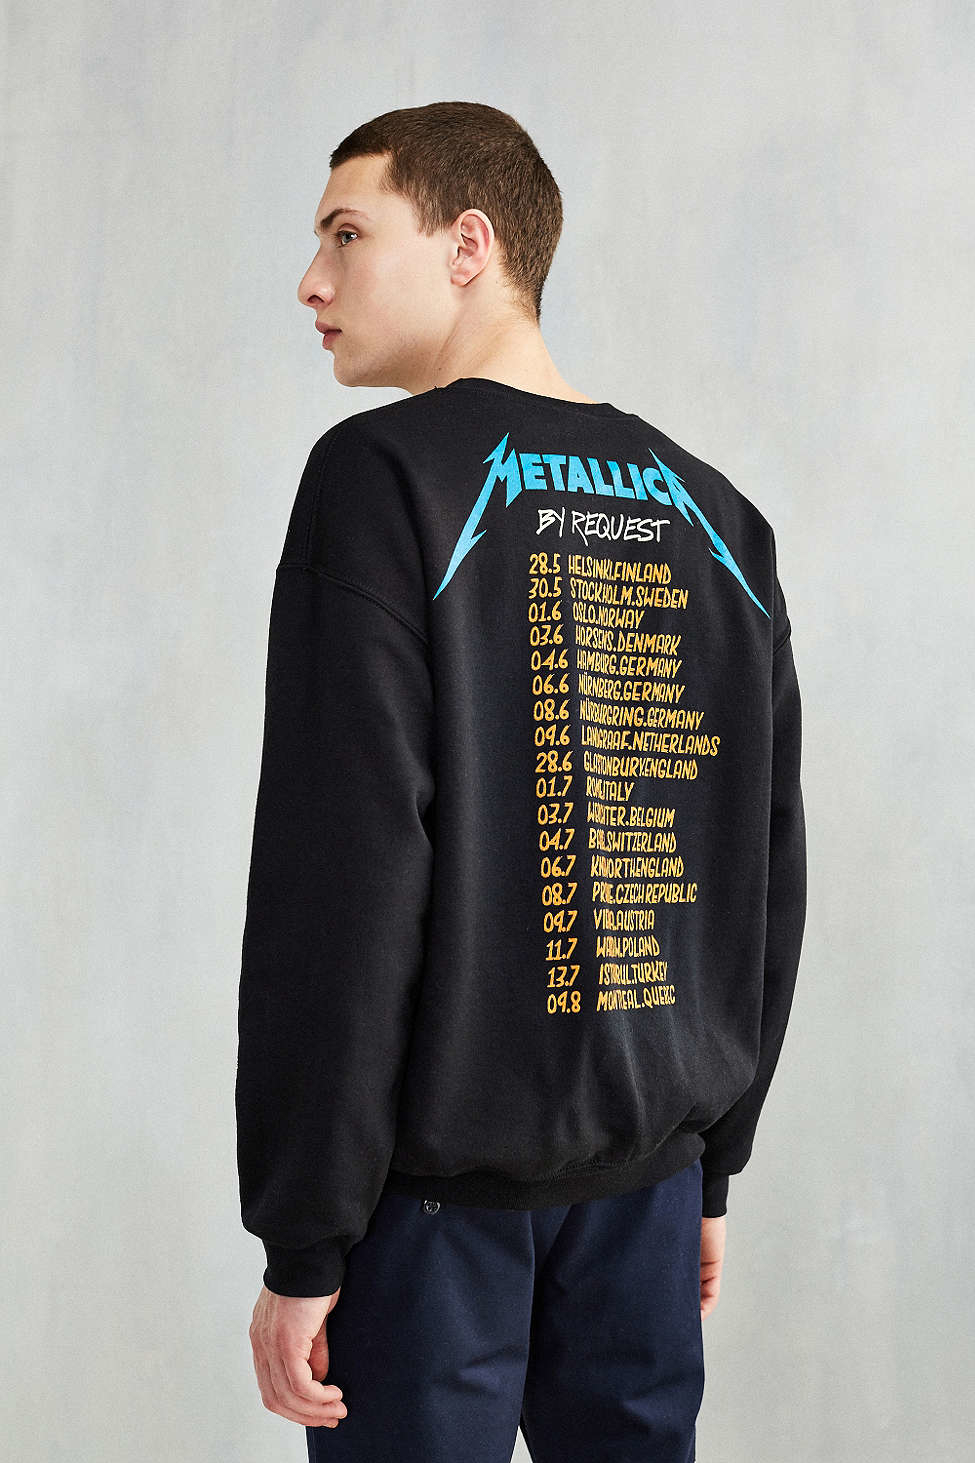 Download Urban Outfitters Cotton Metallica Crew Neck Sweatshirt in ...